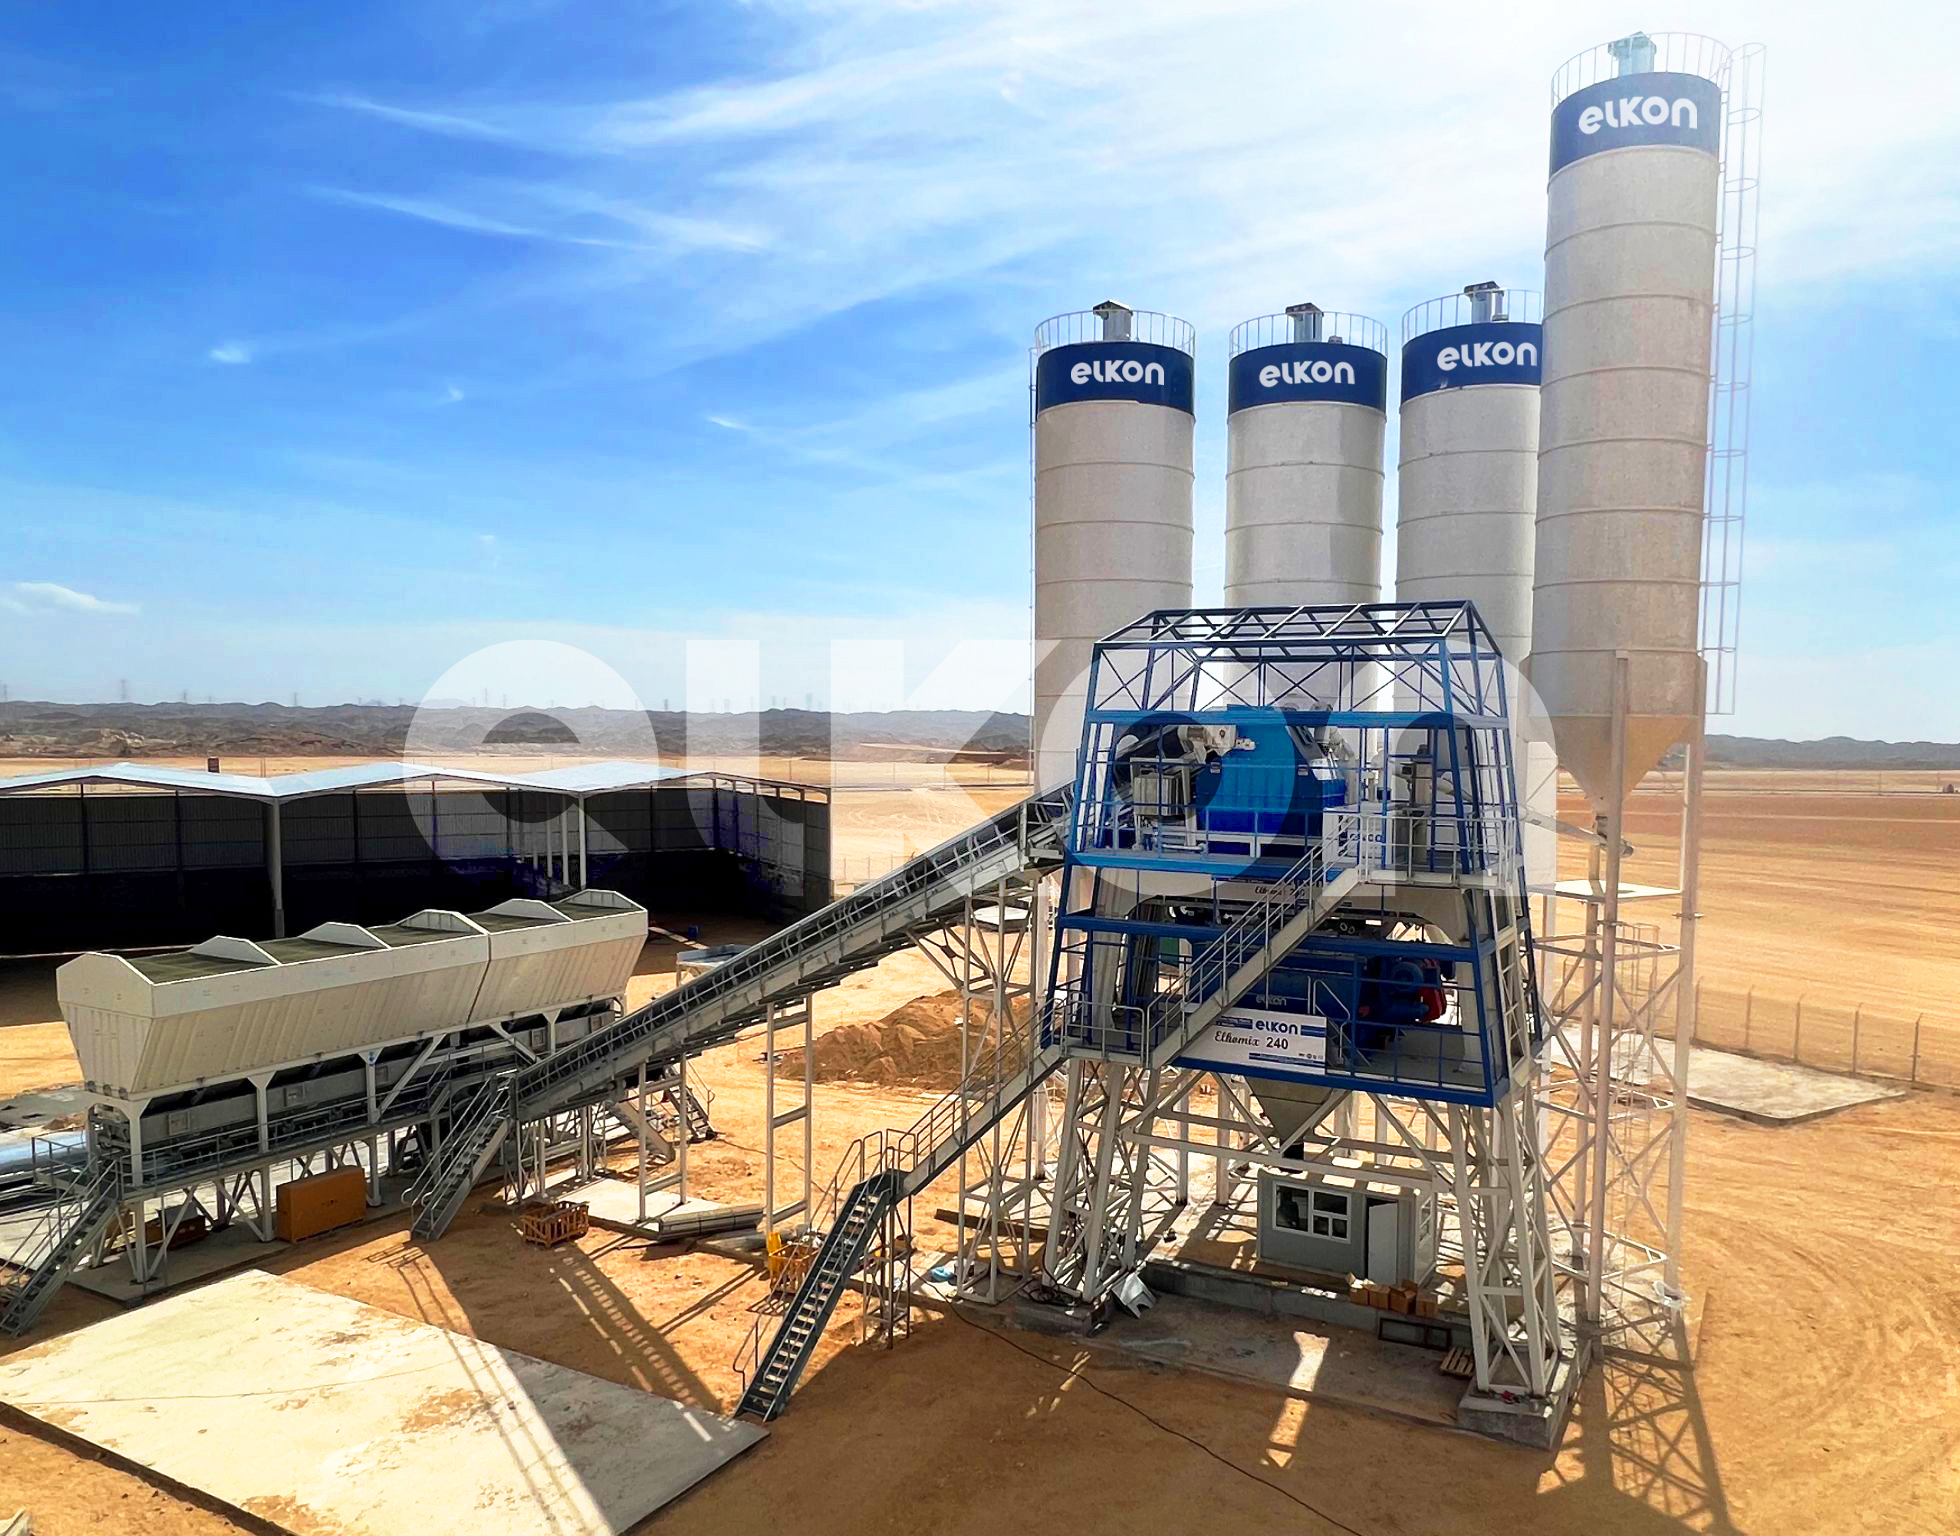 ELKON-Betonmischanlagen stärken das Megaprojekt NEOM in Saudi-Arabien